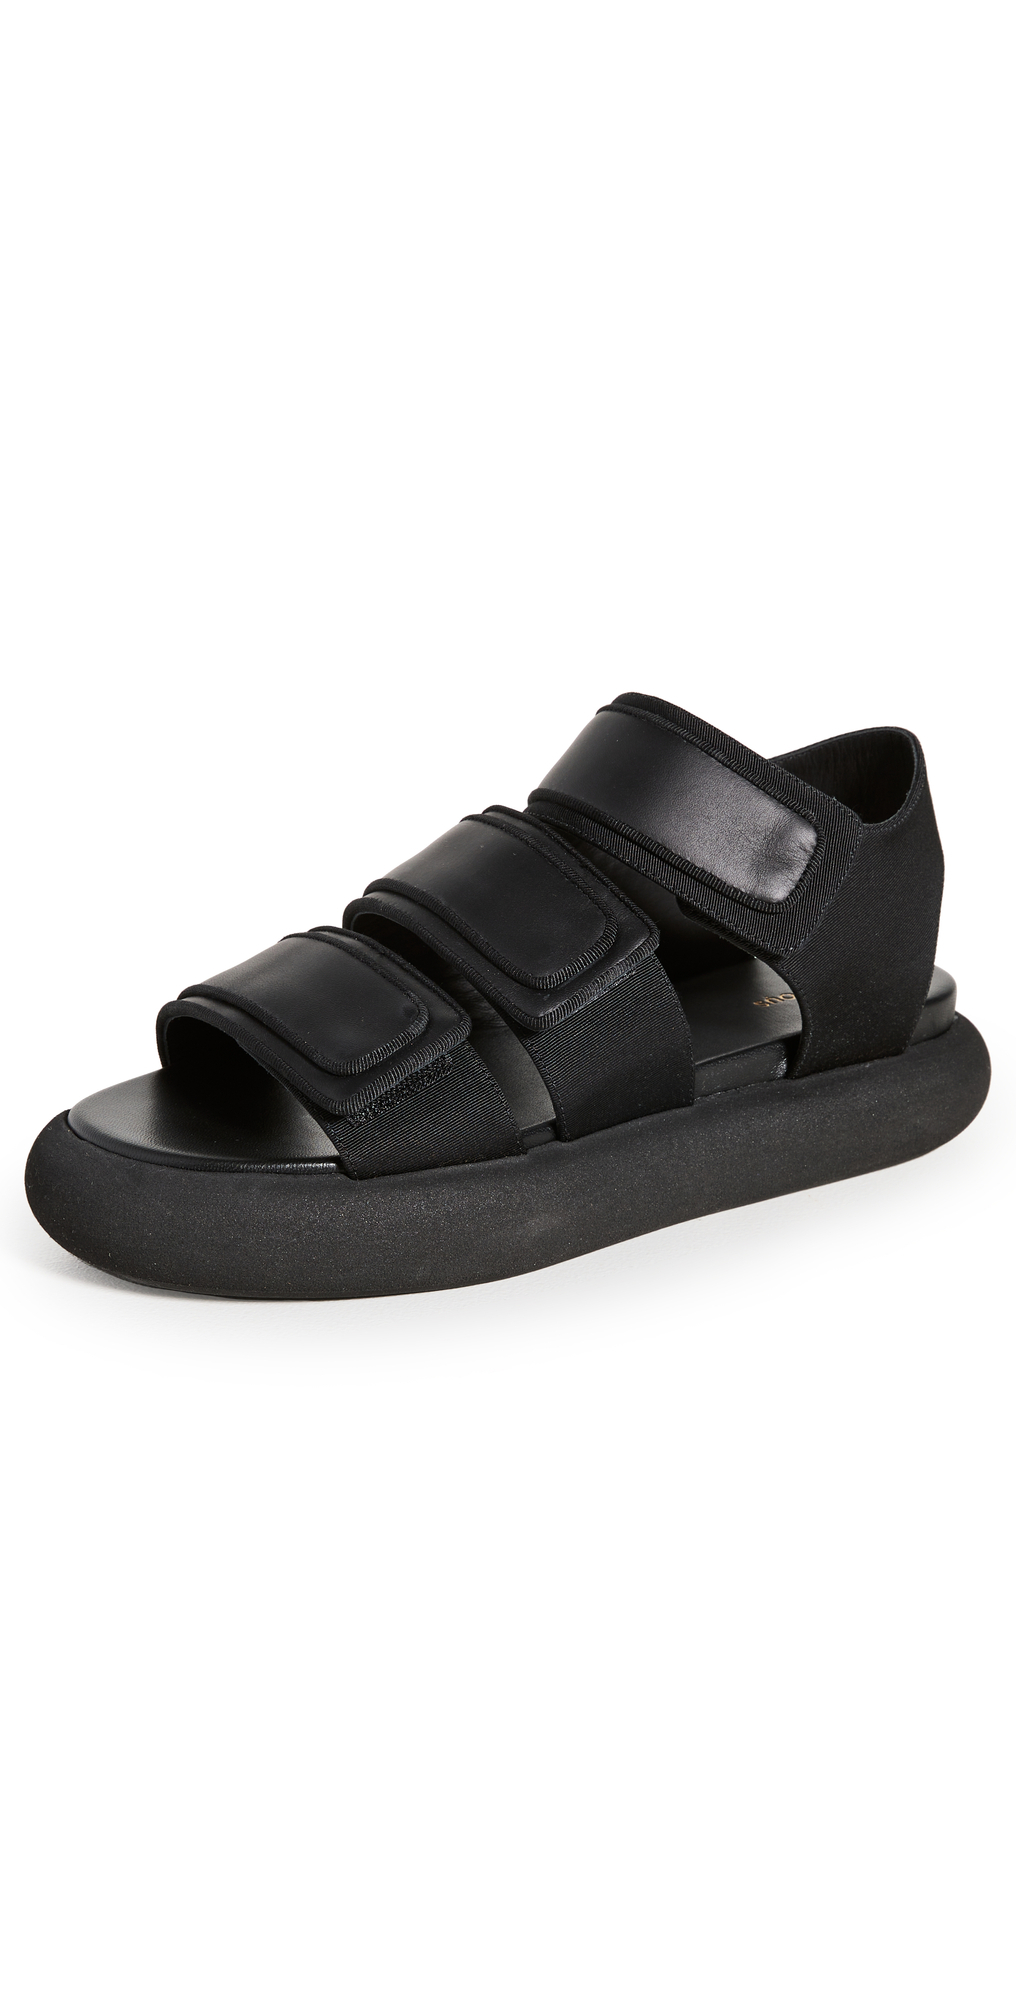 NEOUS Octans Sandals in black